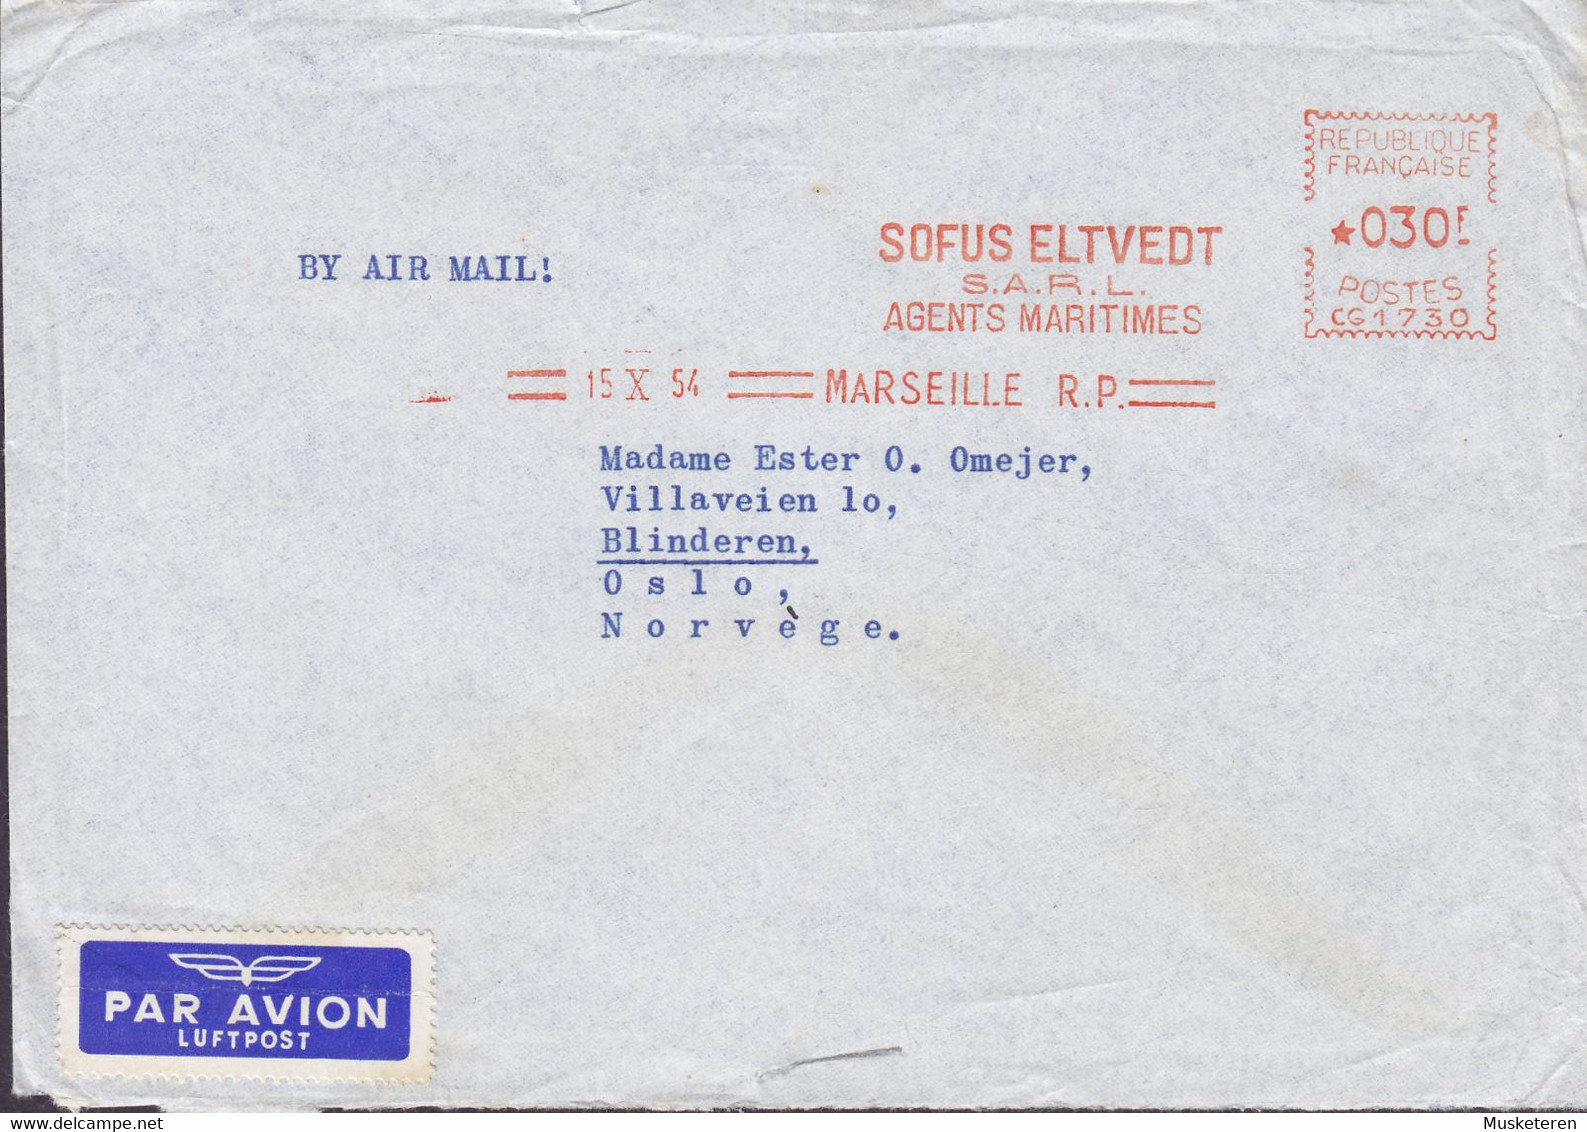 Ships Mail M/S 'FERNFIORD' PAR AVION Label SOFUS ELTVEDT Agents Maritimes, MARSEILLE 1954 Meter Cover Lettre OSLO Norway - Lettres & Documents